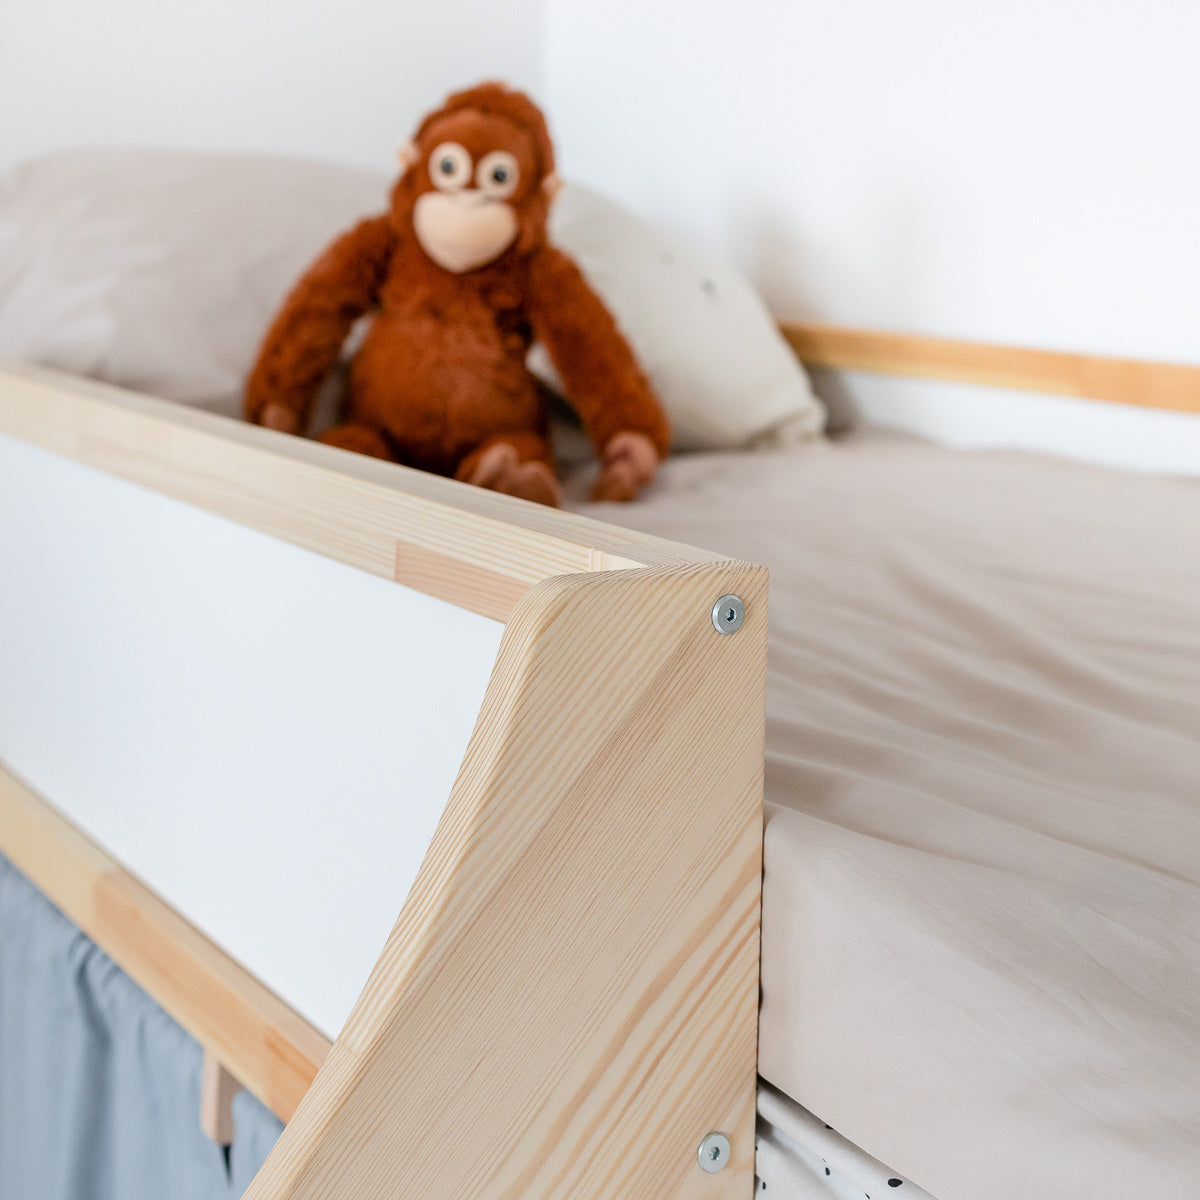 Ikea Kura Kinderbett mit Rutsche und kindlicher Dekoration im Kinderzimmer